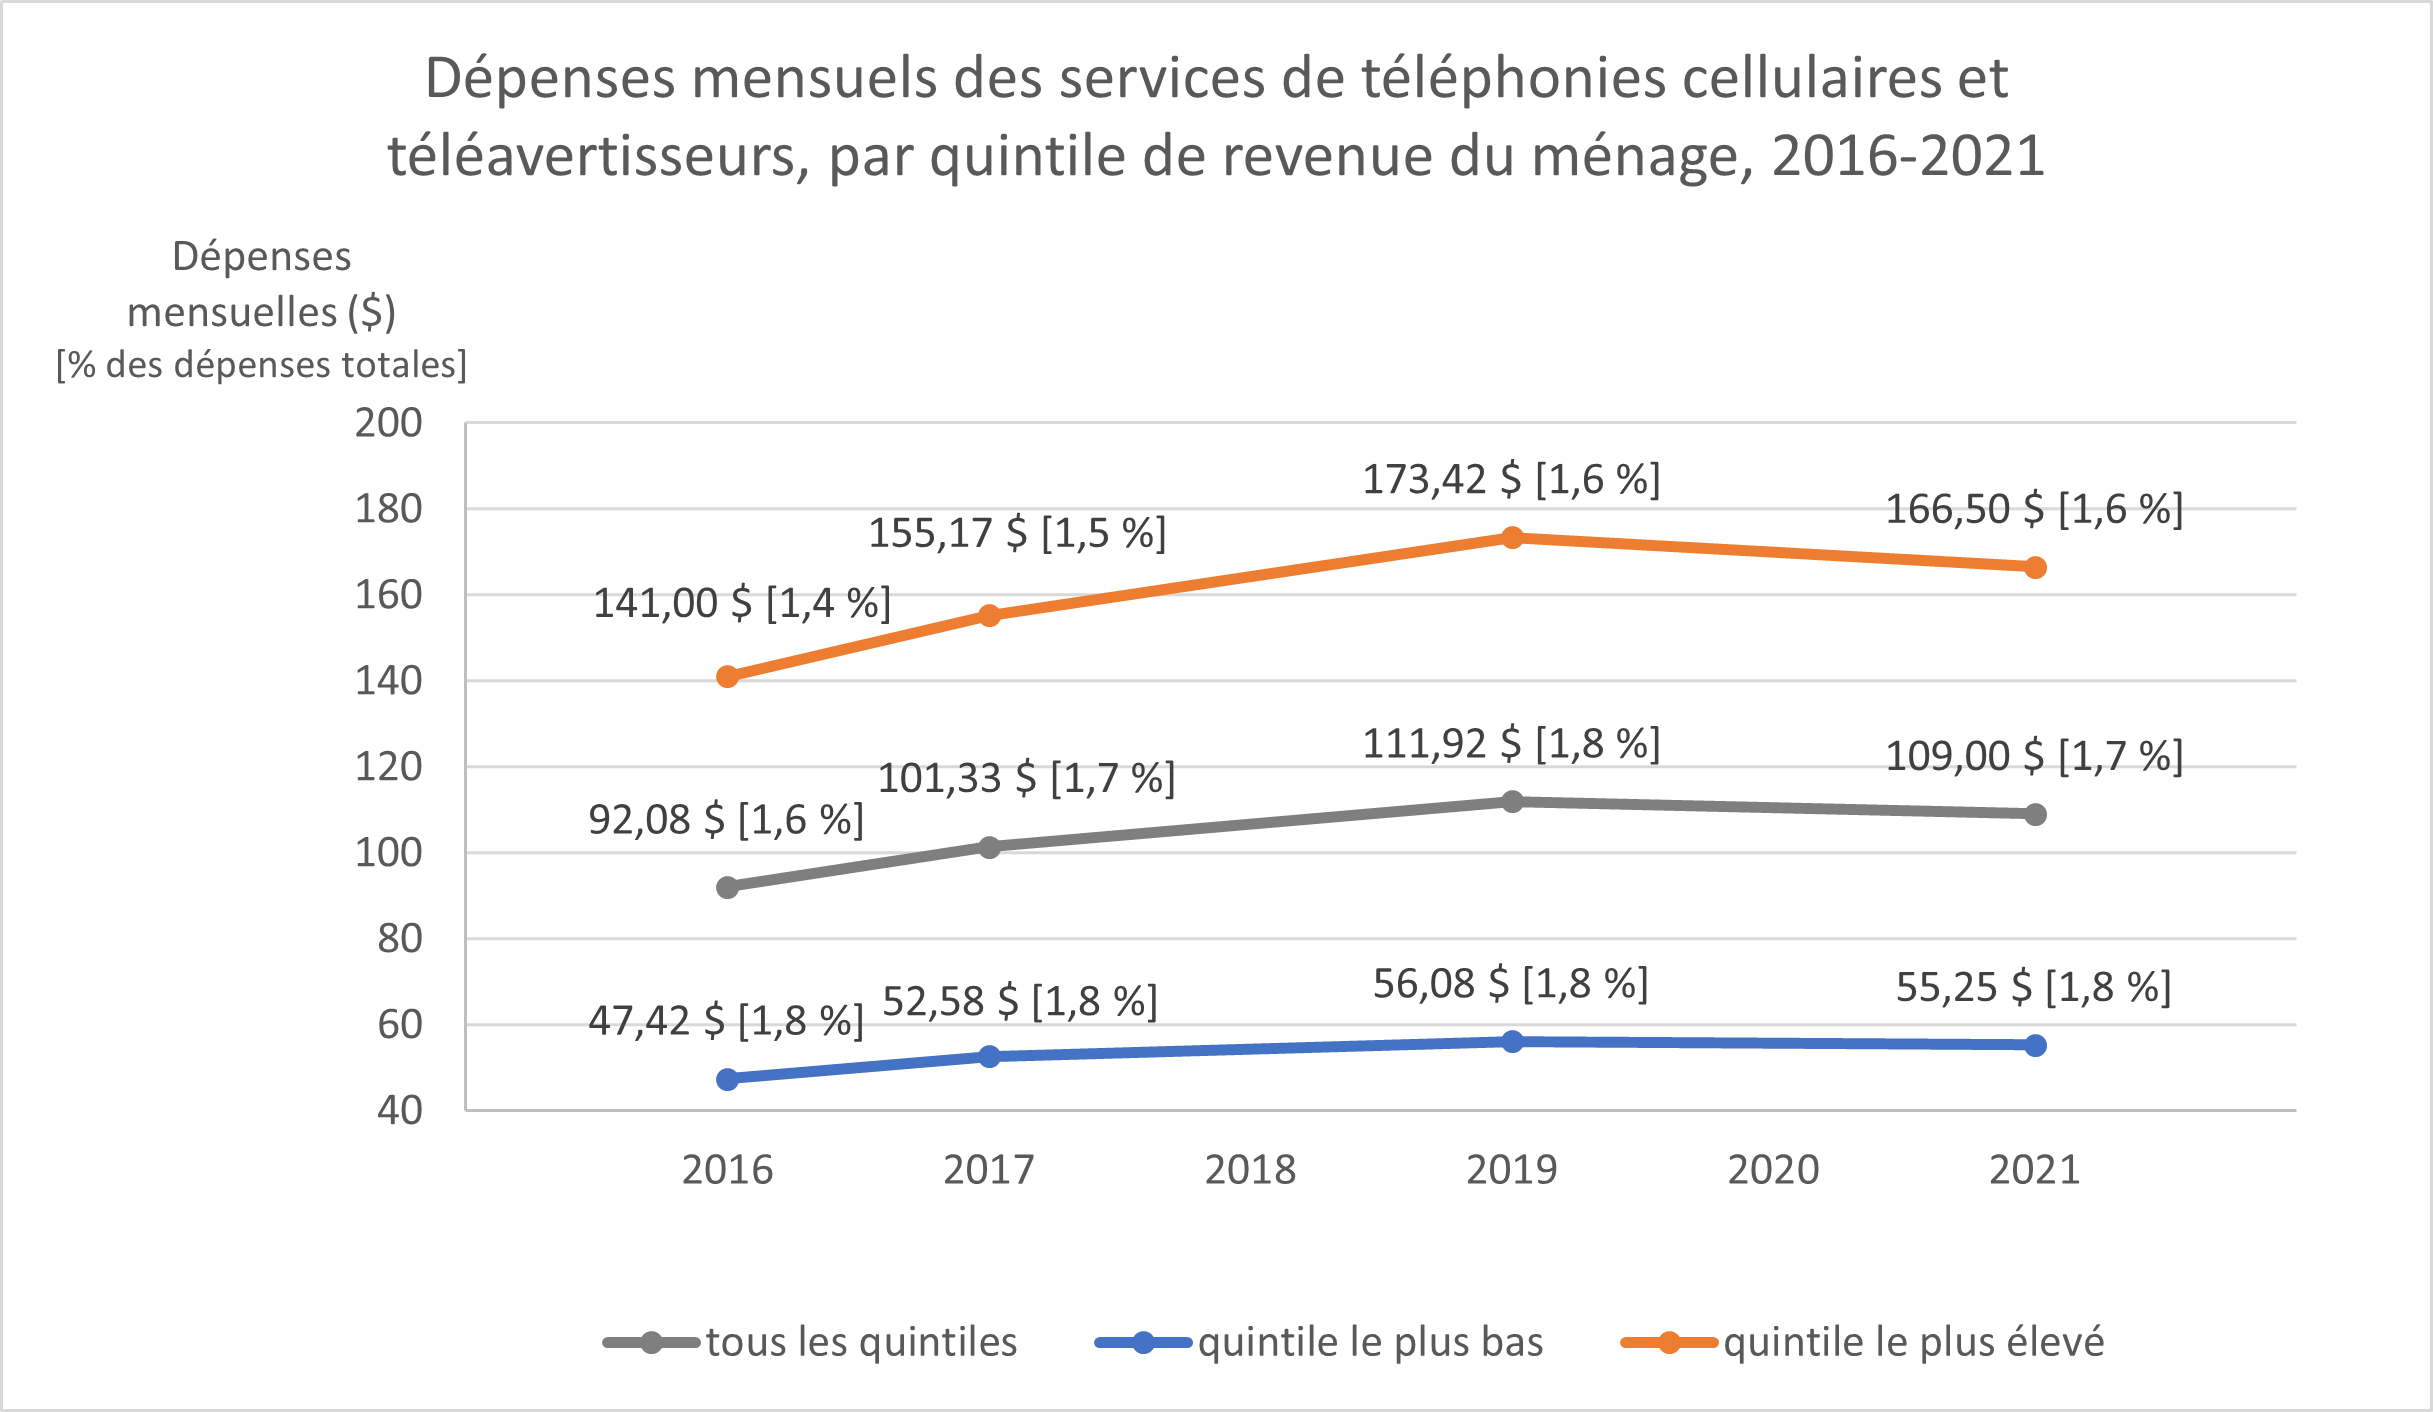 Variation annuelle moyenne de l'indice des prix des services cellulaires 2016-2021